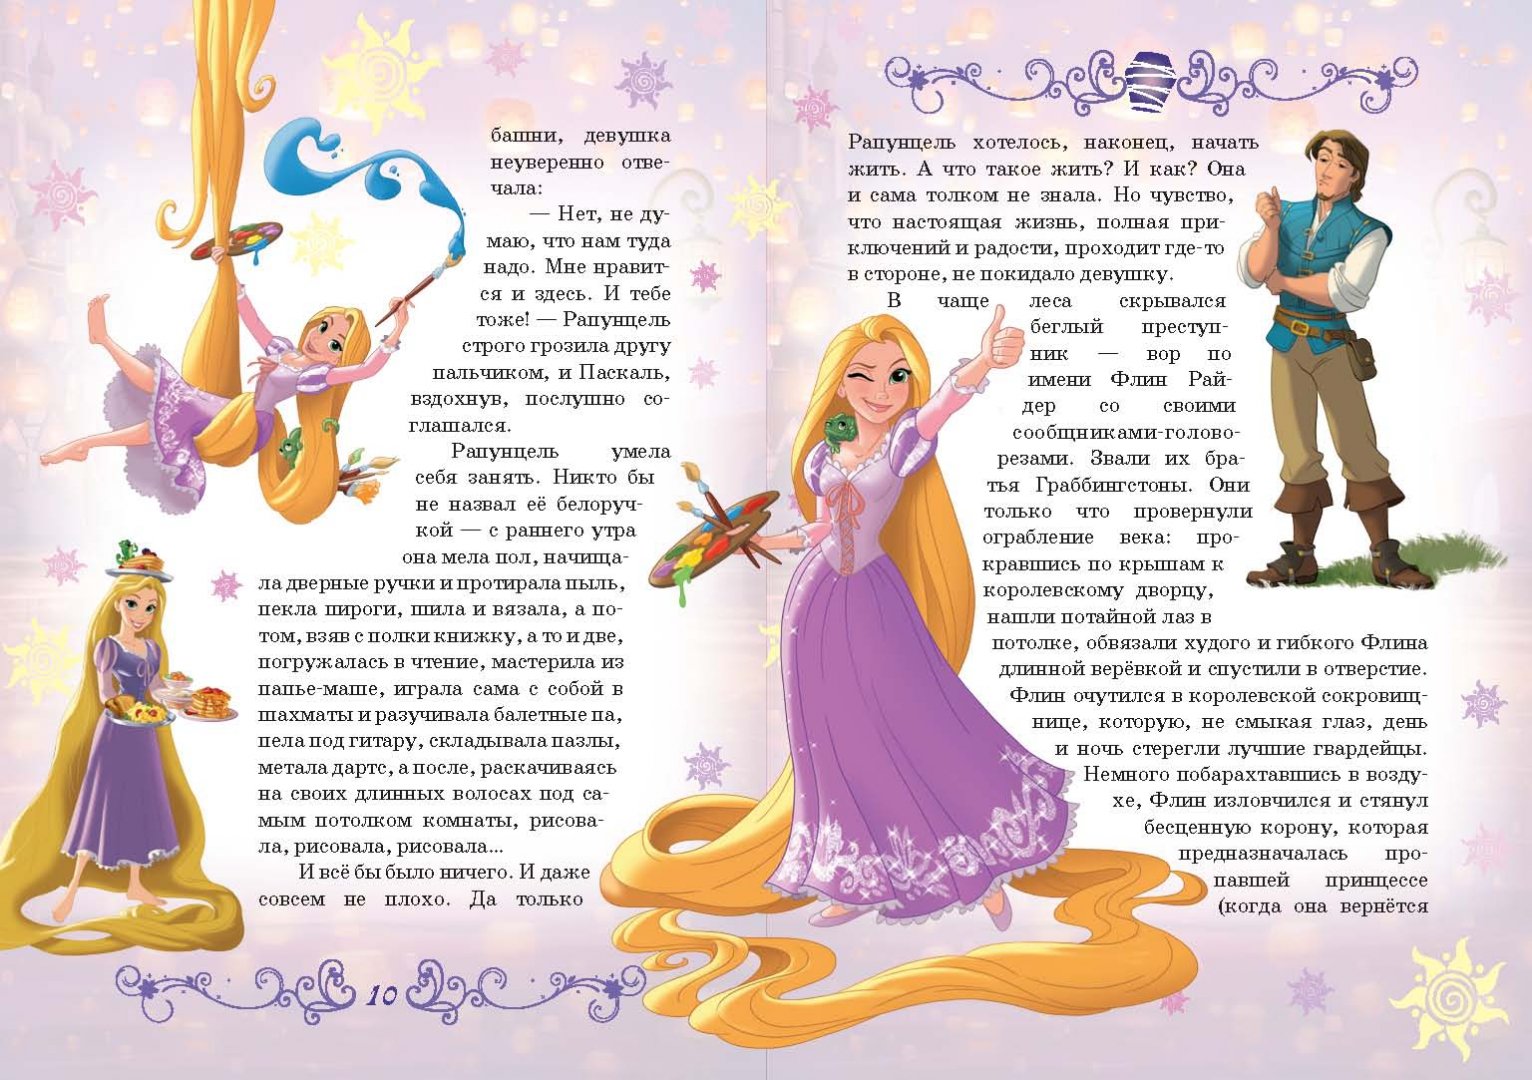 Сказка про принцесс текст читать онлайн бесплатно